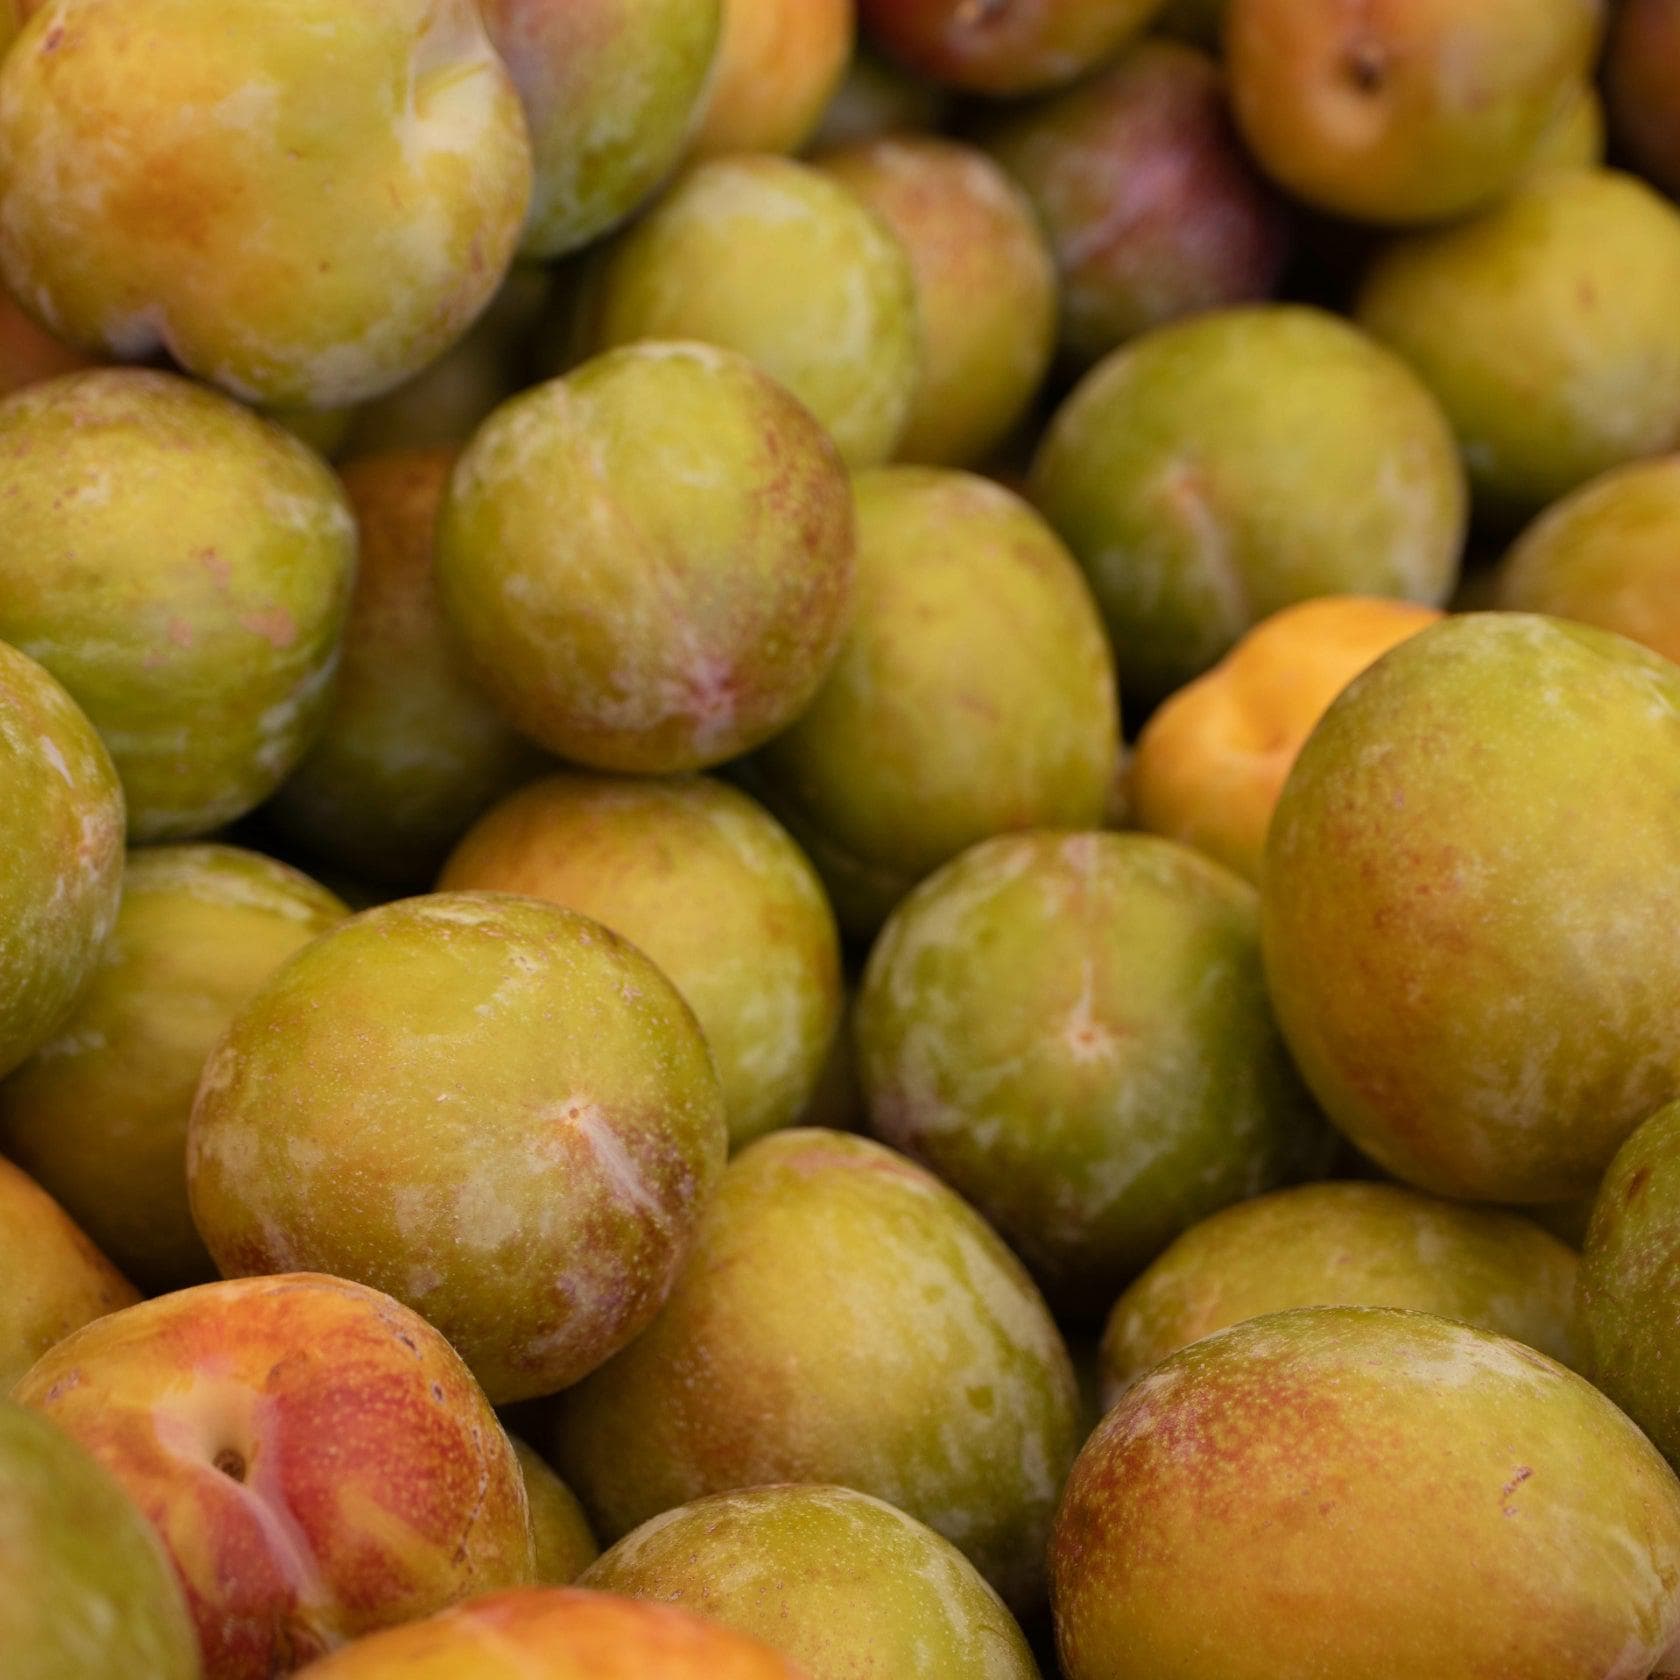 ackerbaum Aprikosen-Zwetschgenbaum - Flavour Queen kaufen